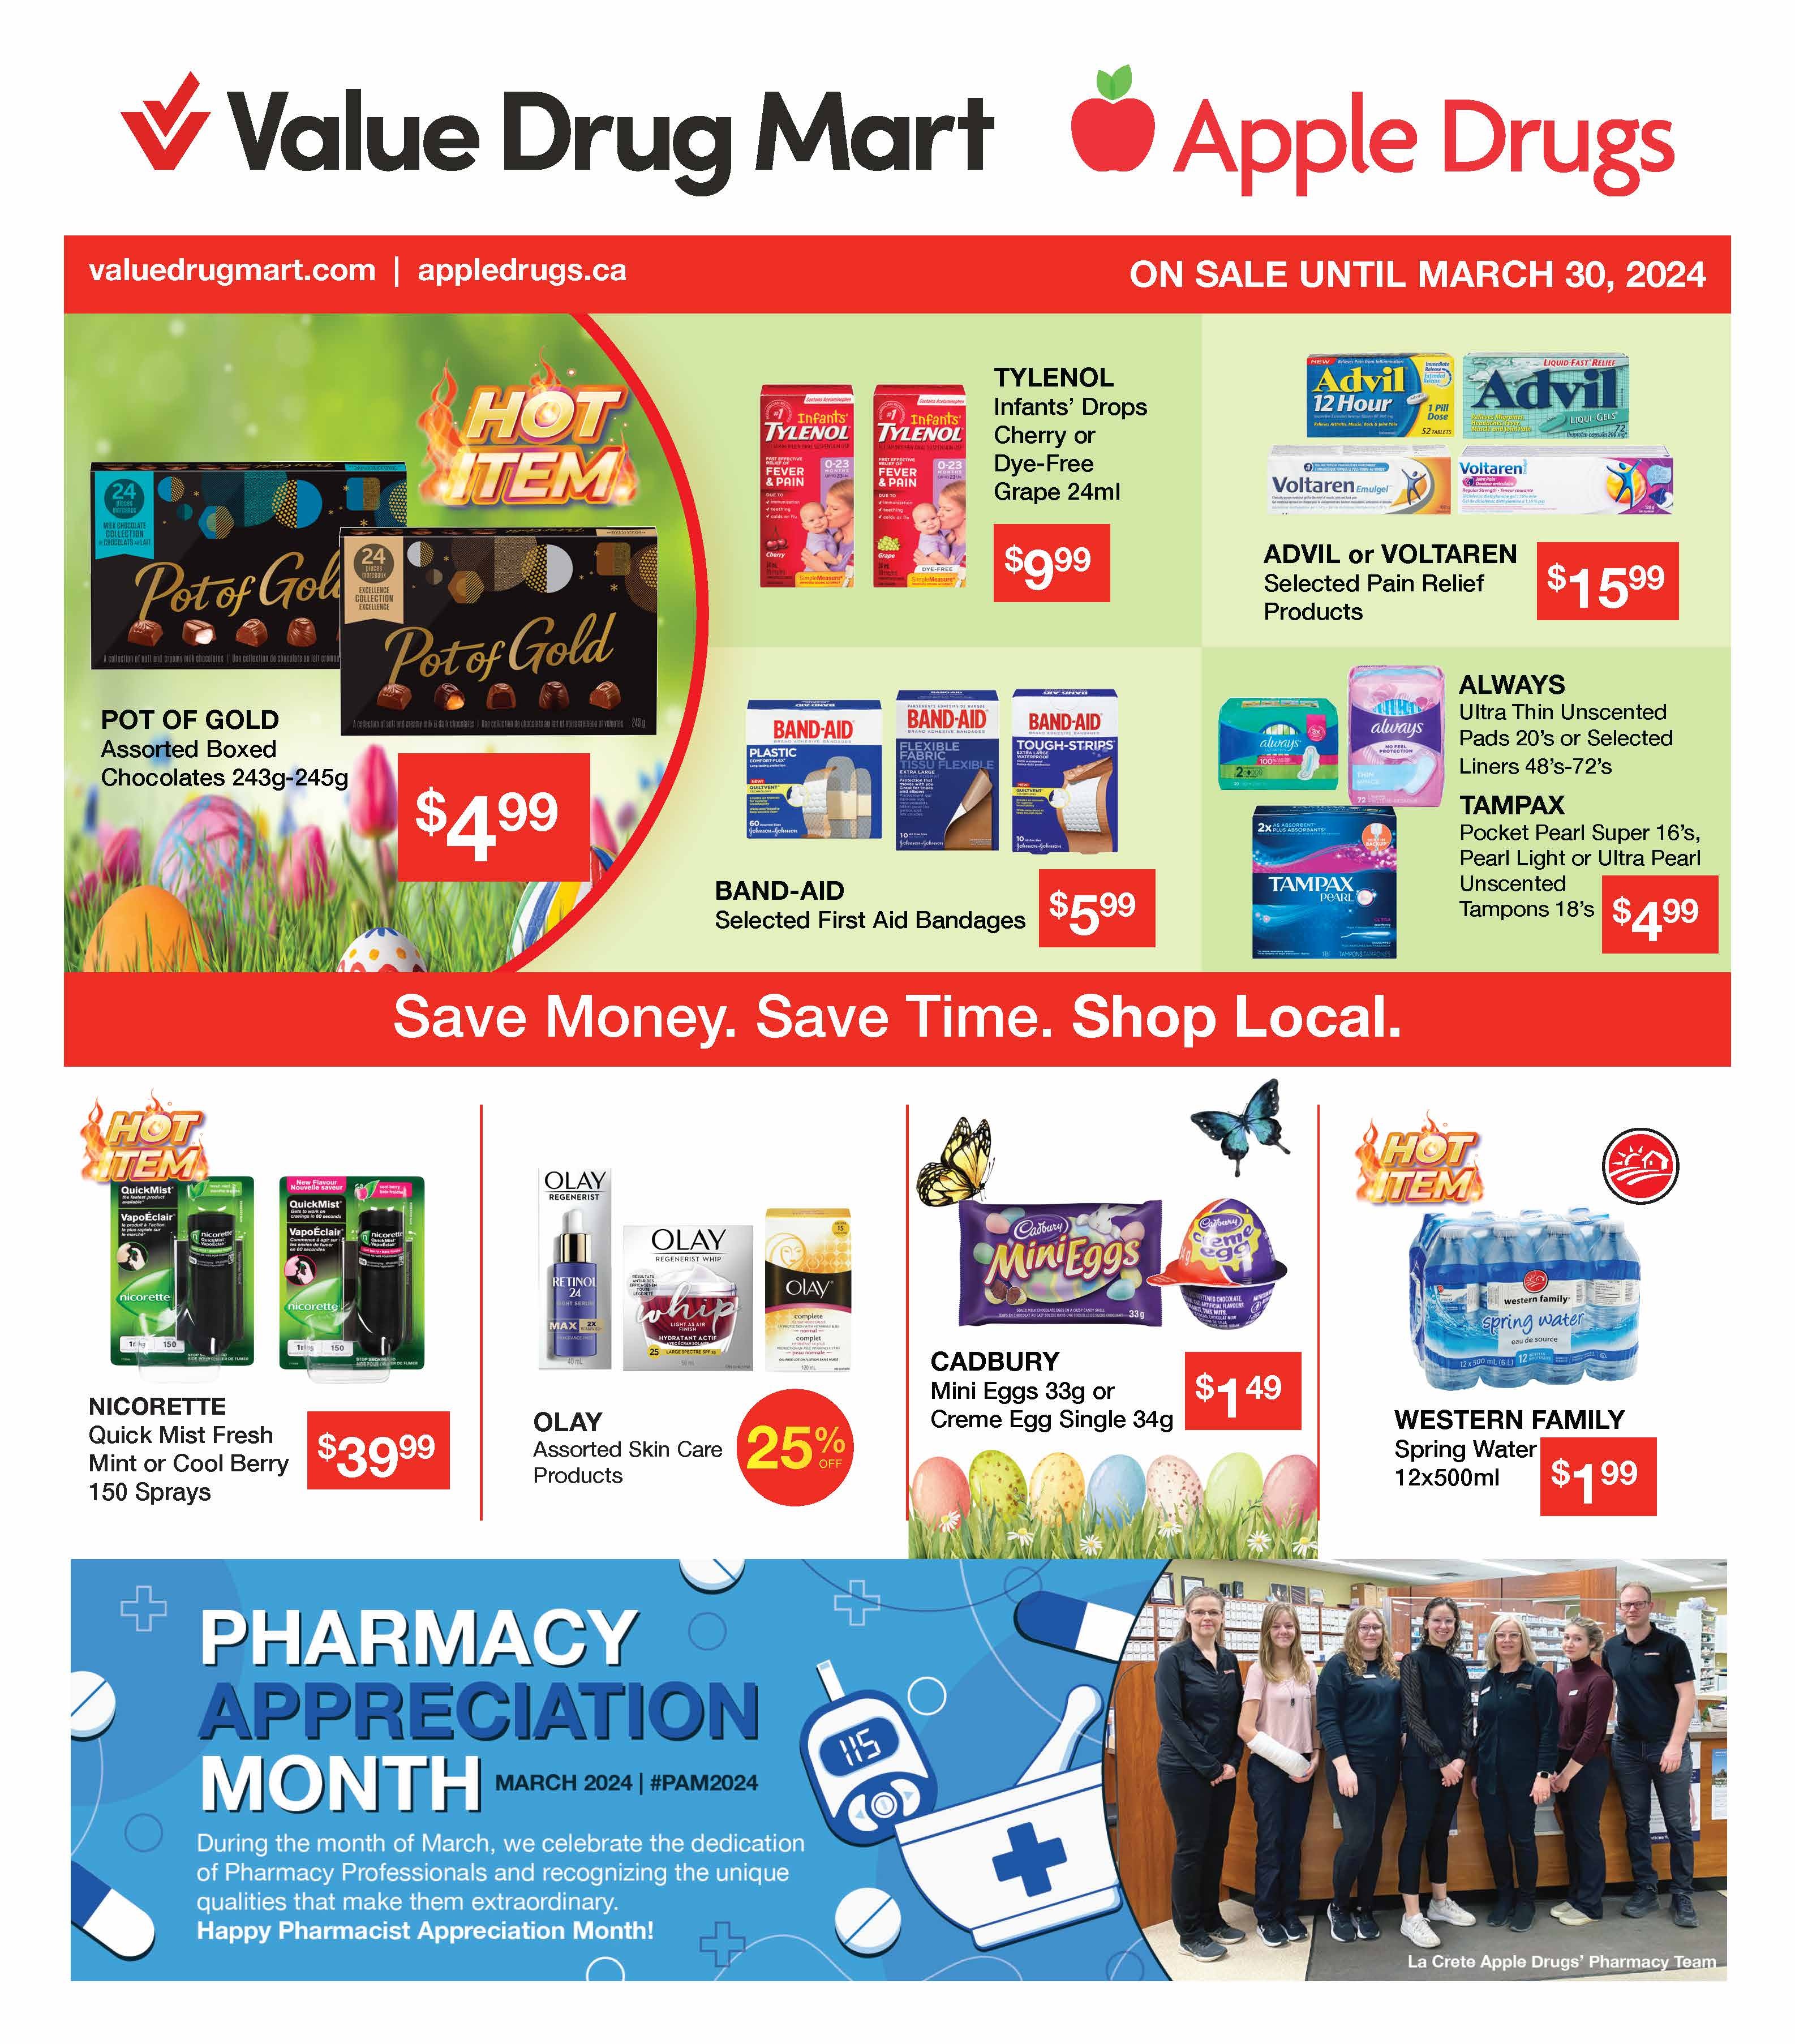 Apple Drugs - 2 Weeks of Savings